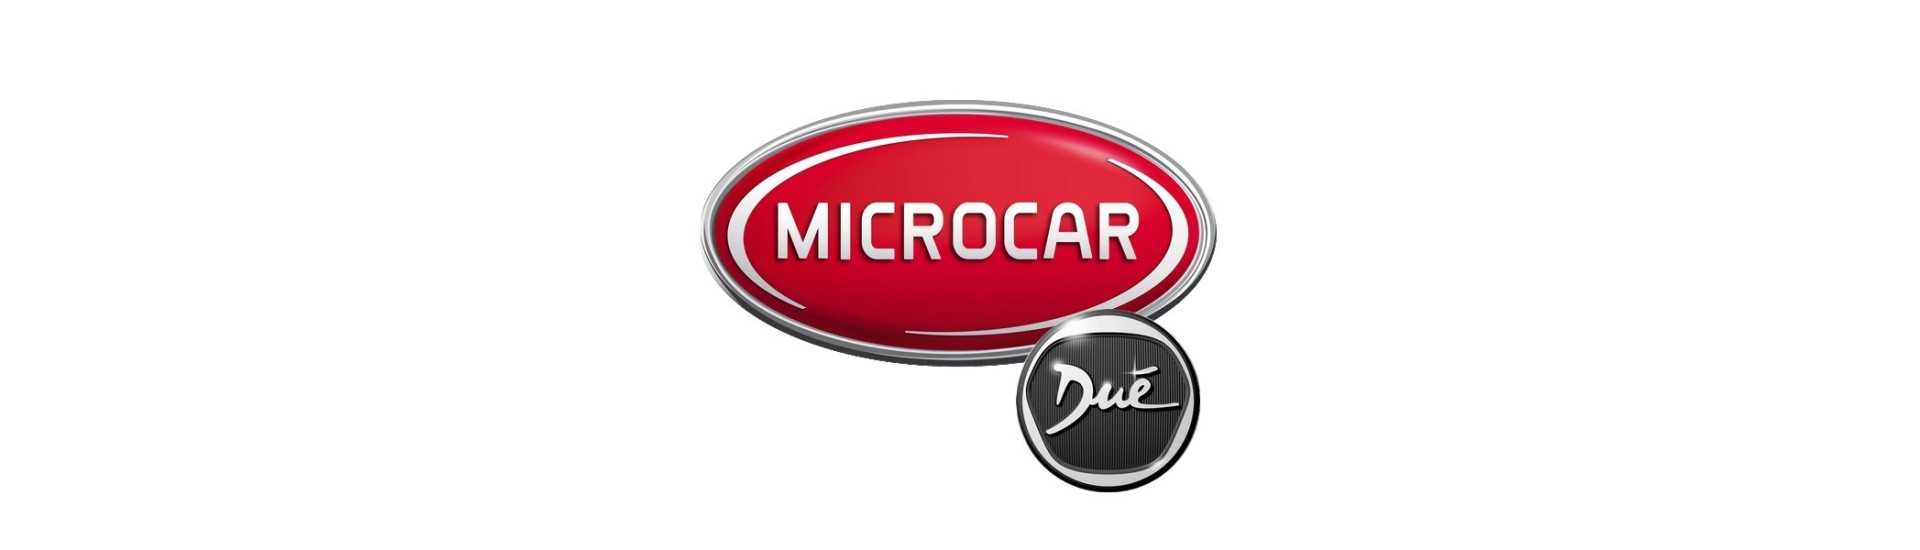 Innentürverkleidung Bestpreis Auto ohne Erlaubnis Microcar Dué